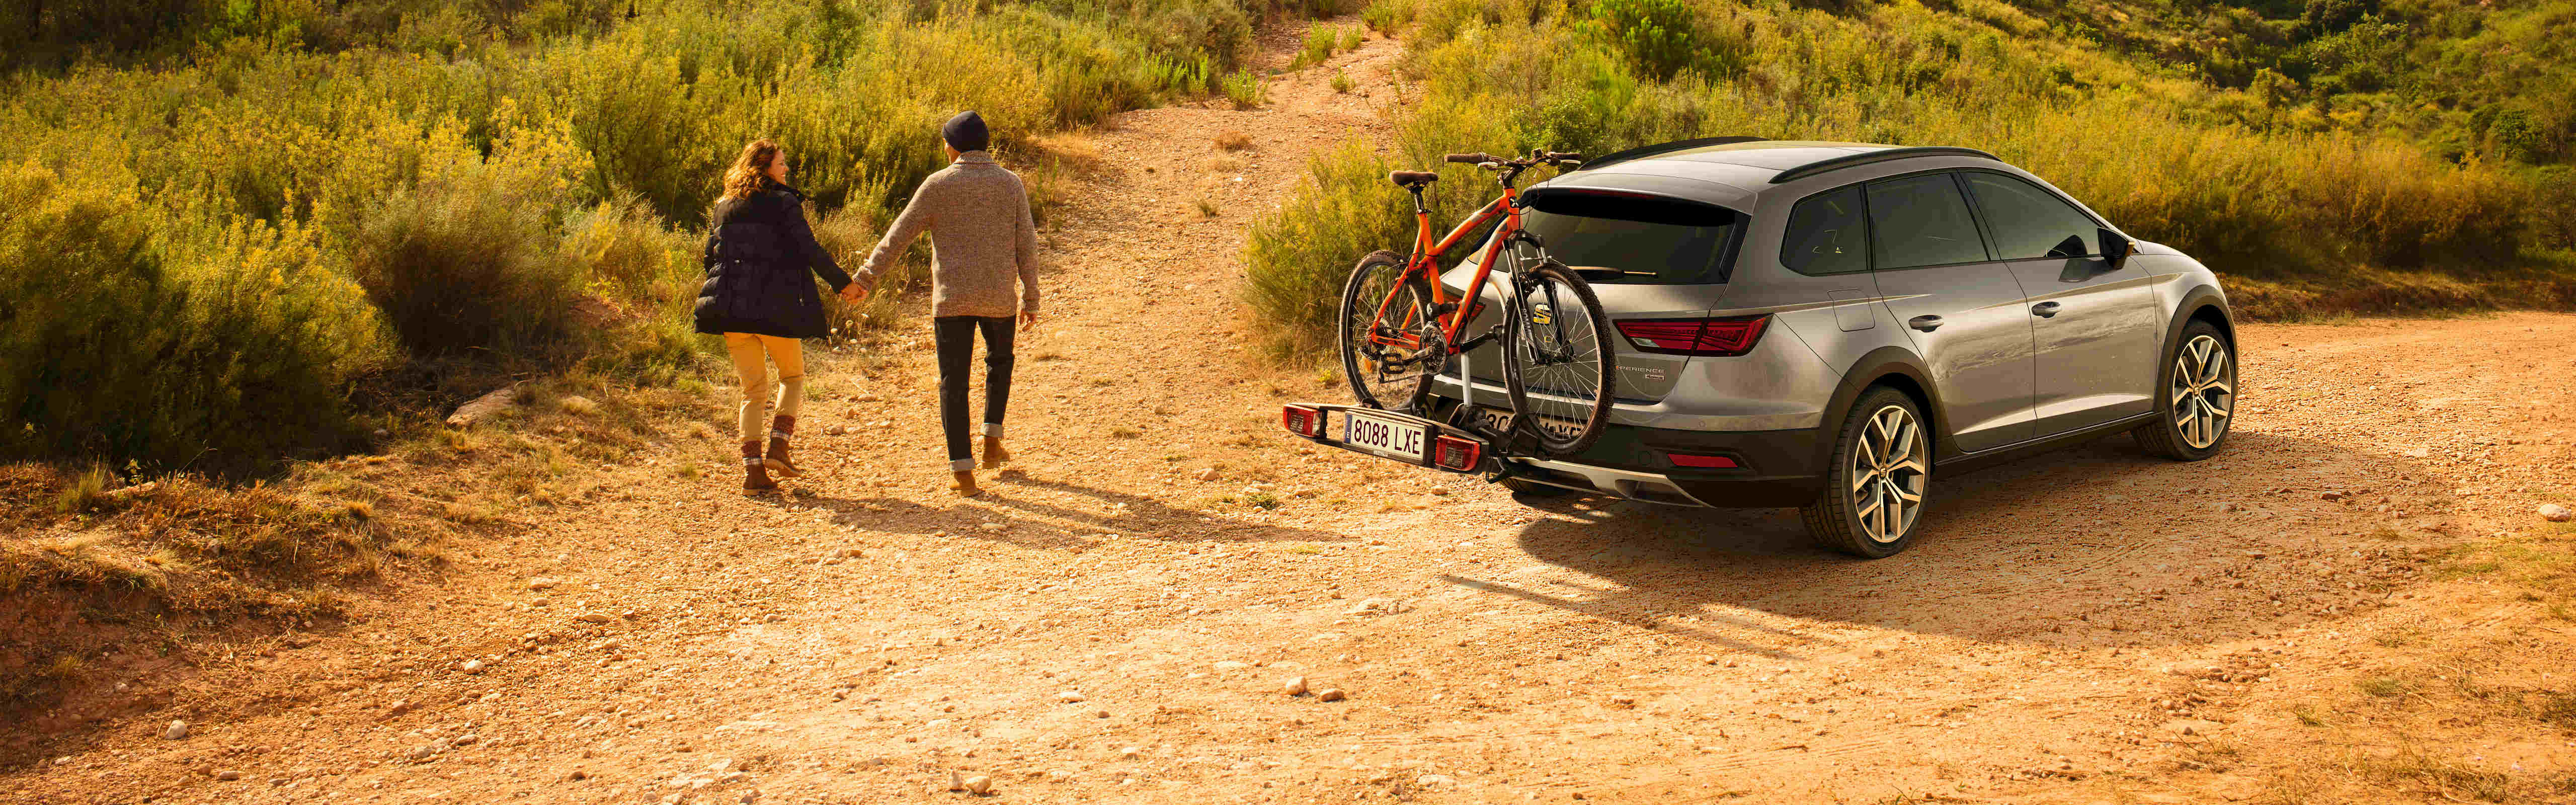 SEAT neuer Service und Wartung – Landschaftsaufnahme eines SEAT Leon mit Fahrradträger an der Seite eines Hügels